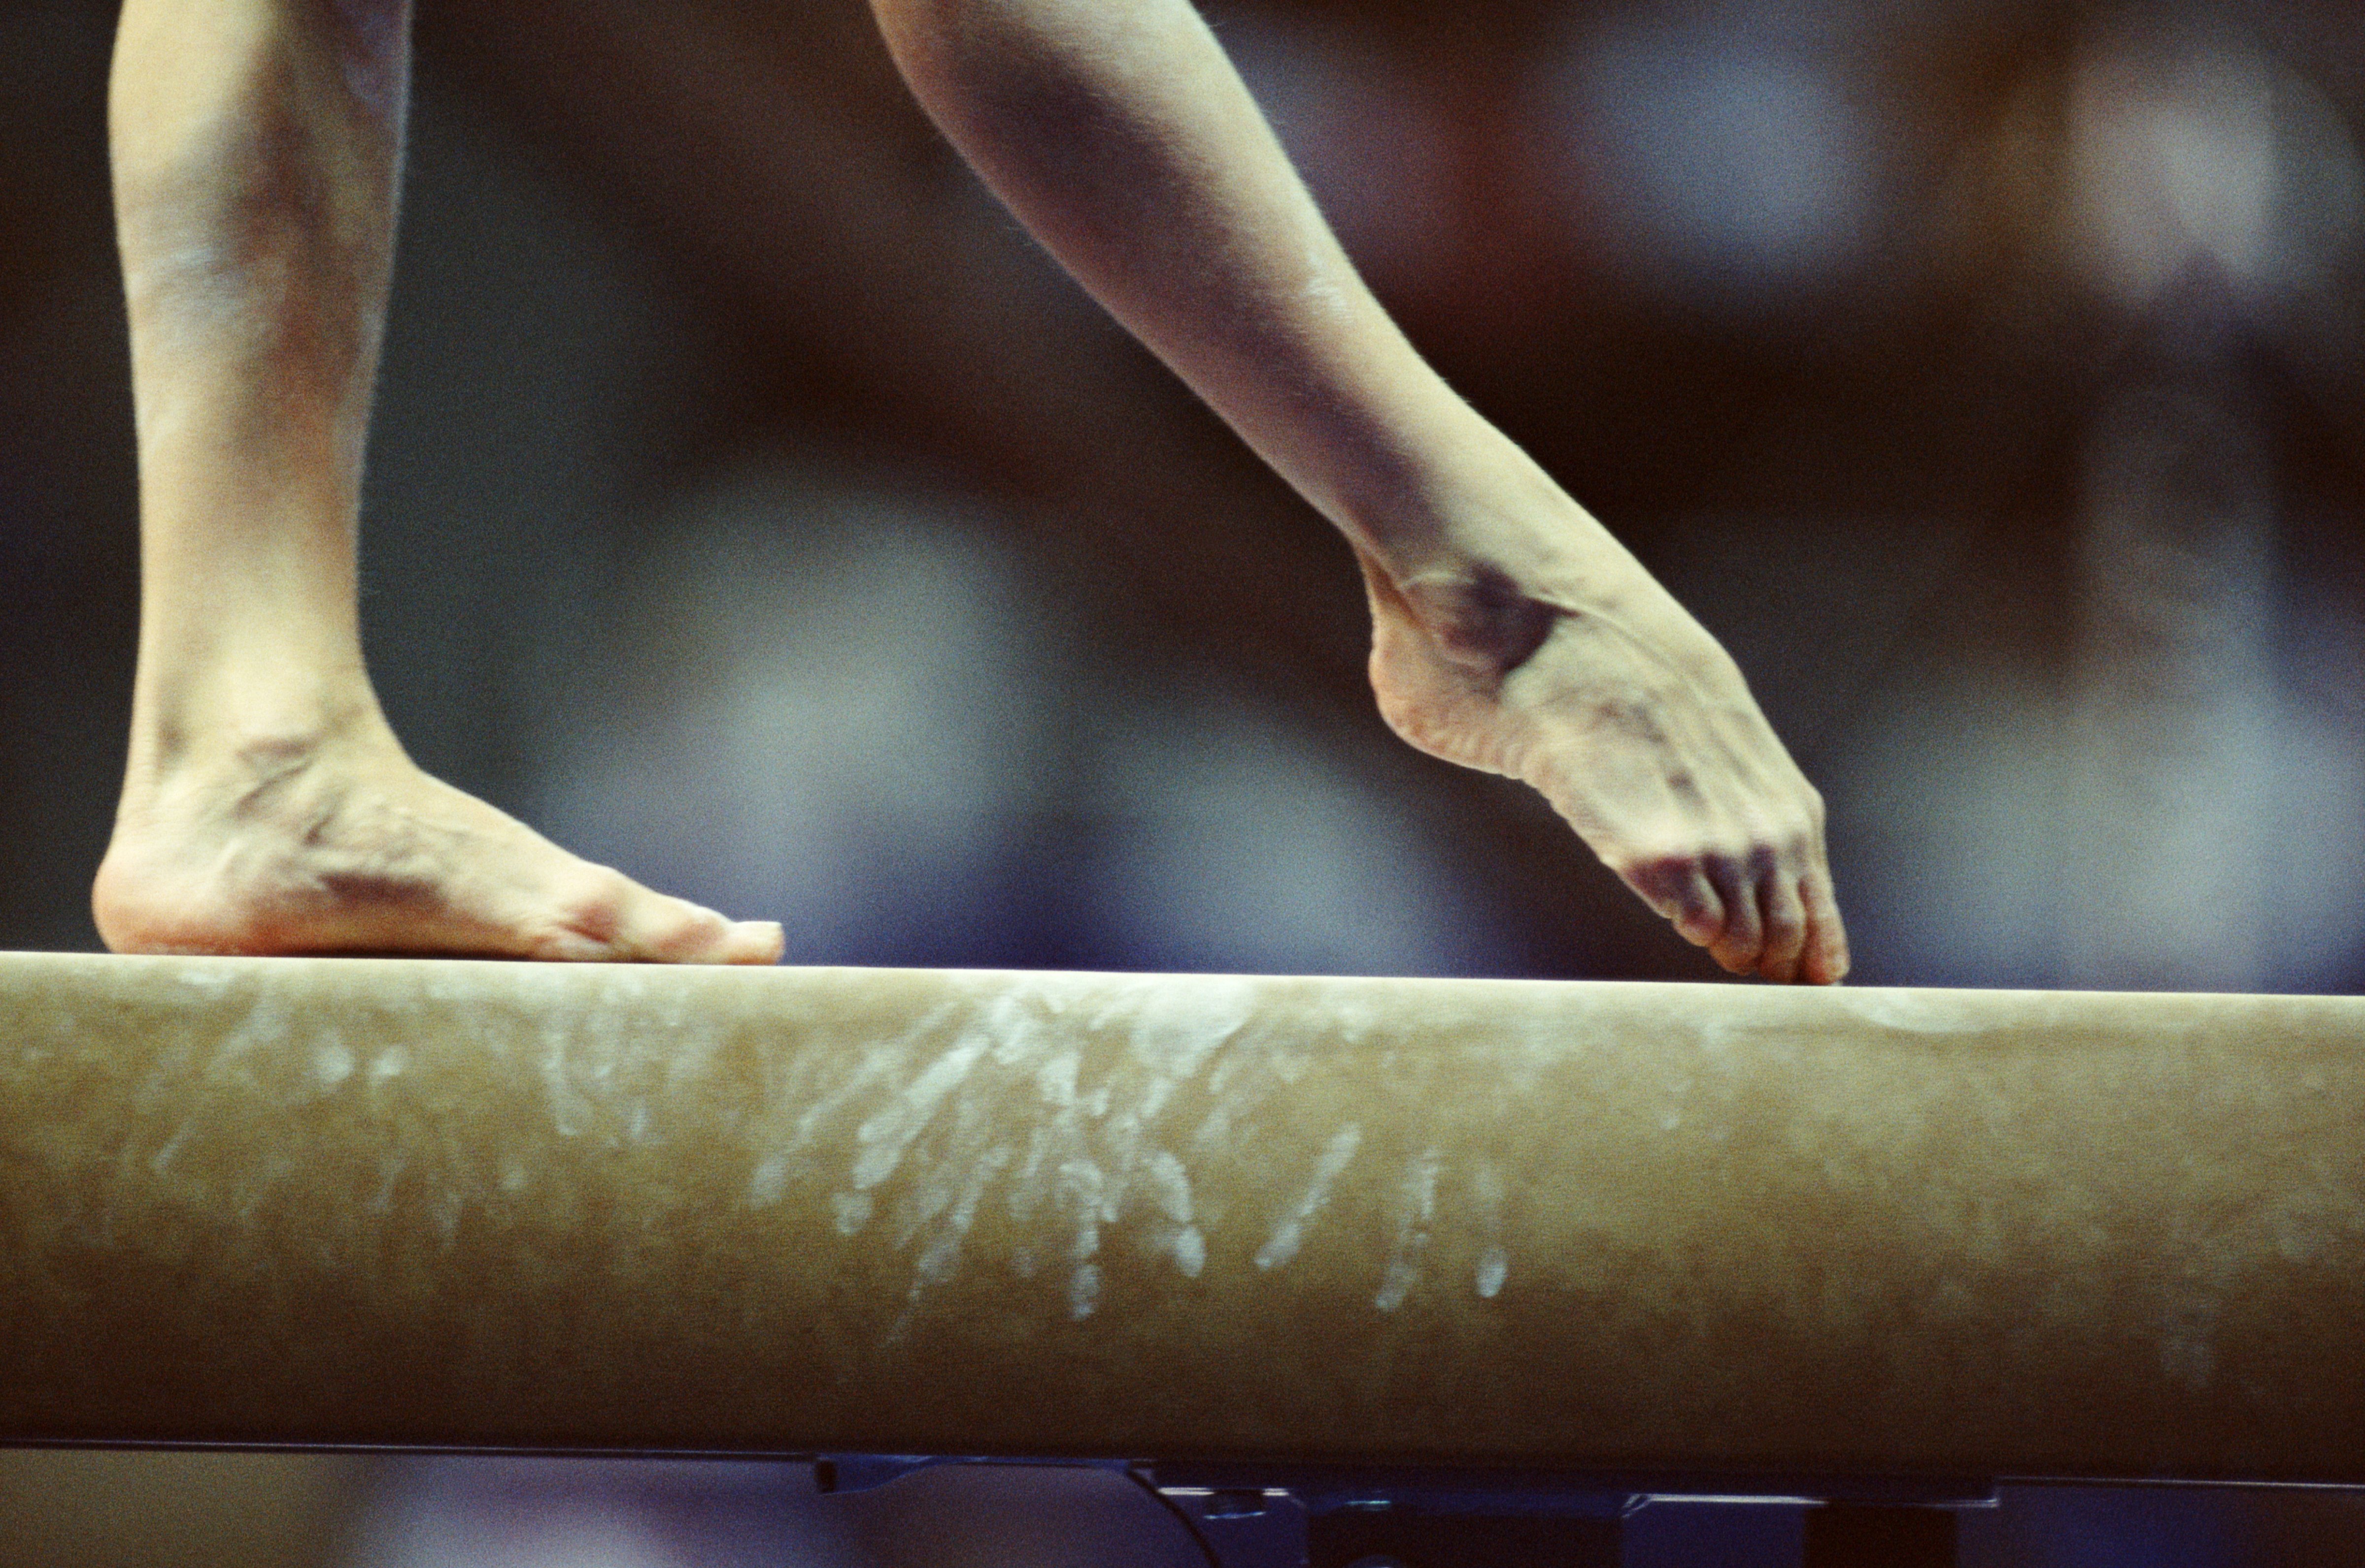 Gymnast on beam, close-up of feet